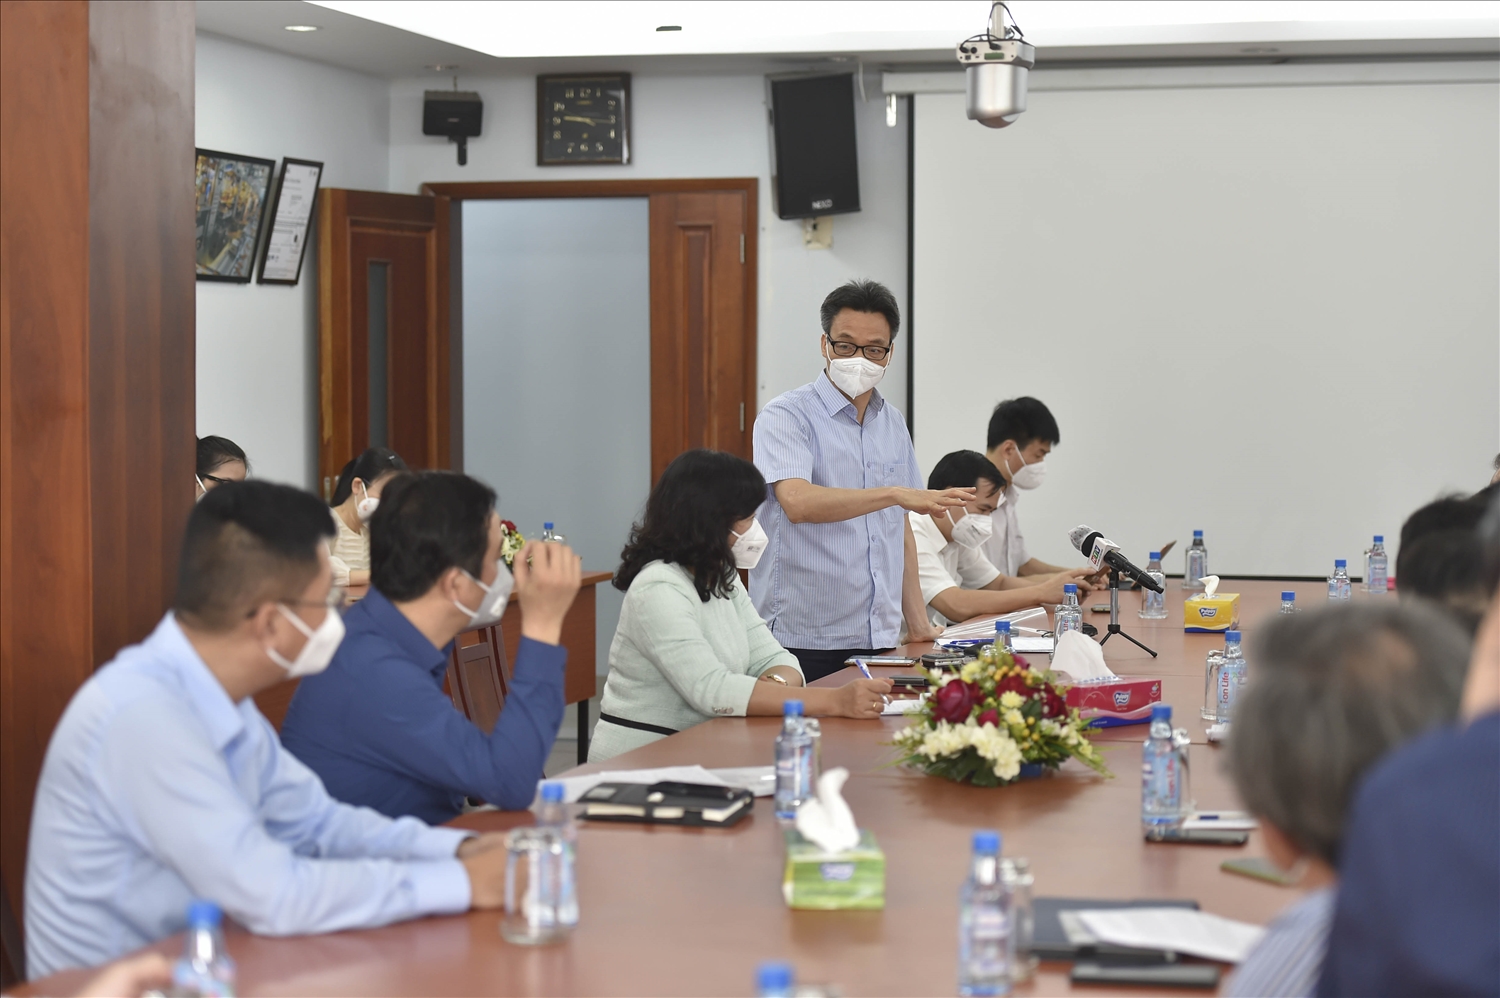 Phó Thủ tướng Vũ Đức Đam trao đổi với lãnh đạo Công ty Cổ phần Việt Nam Kỹ nghệ Súc sản (Vissan) tại buổi làm việc sáng 6/8 - Ảnh: VGP/Đình Nam